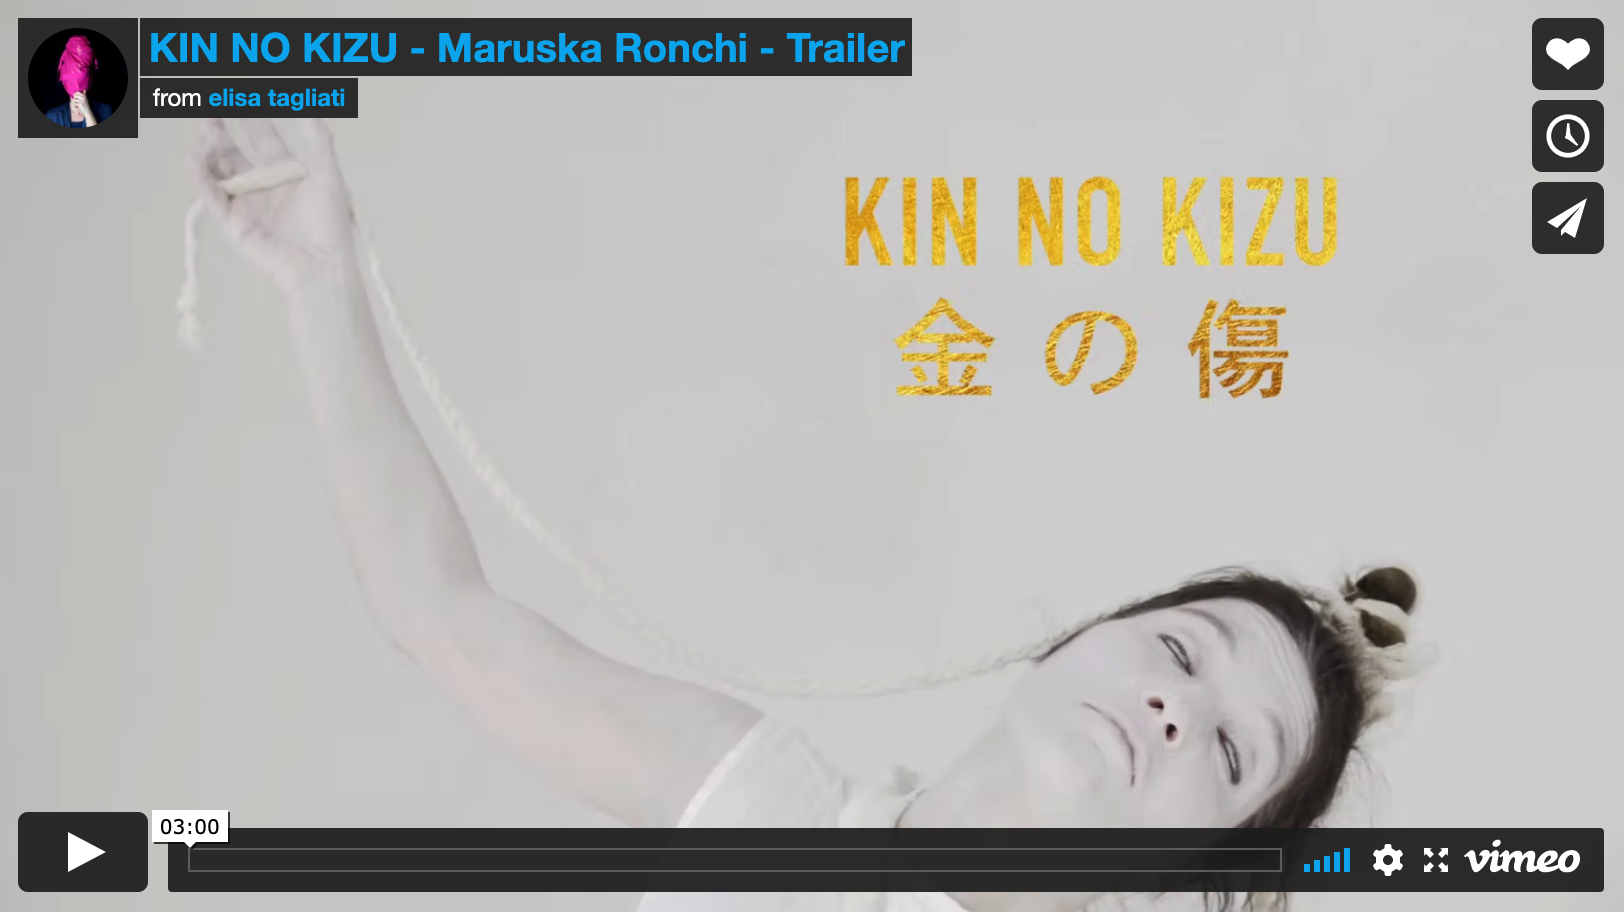 KIN NO KIZU - Maruska Ronchi - Trailer